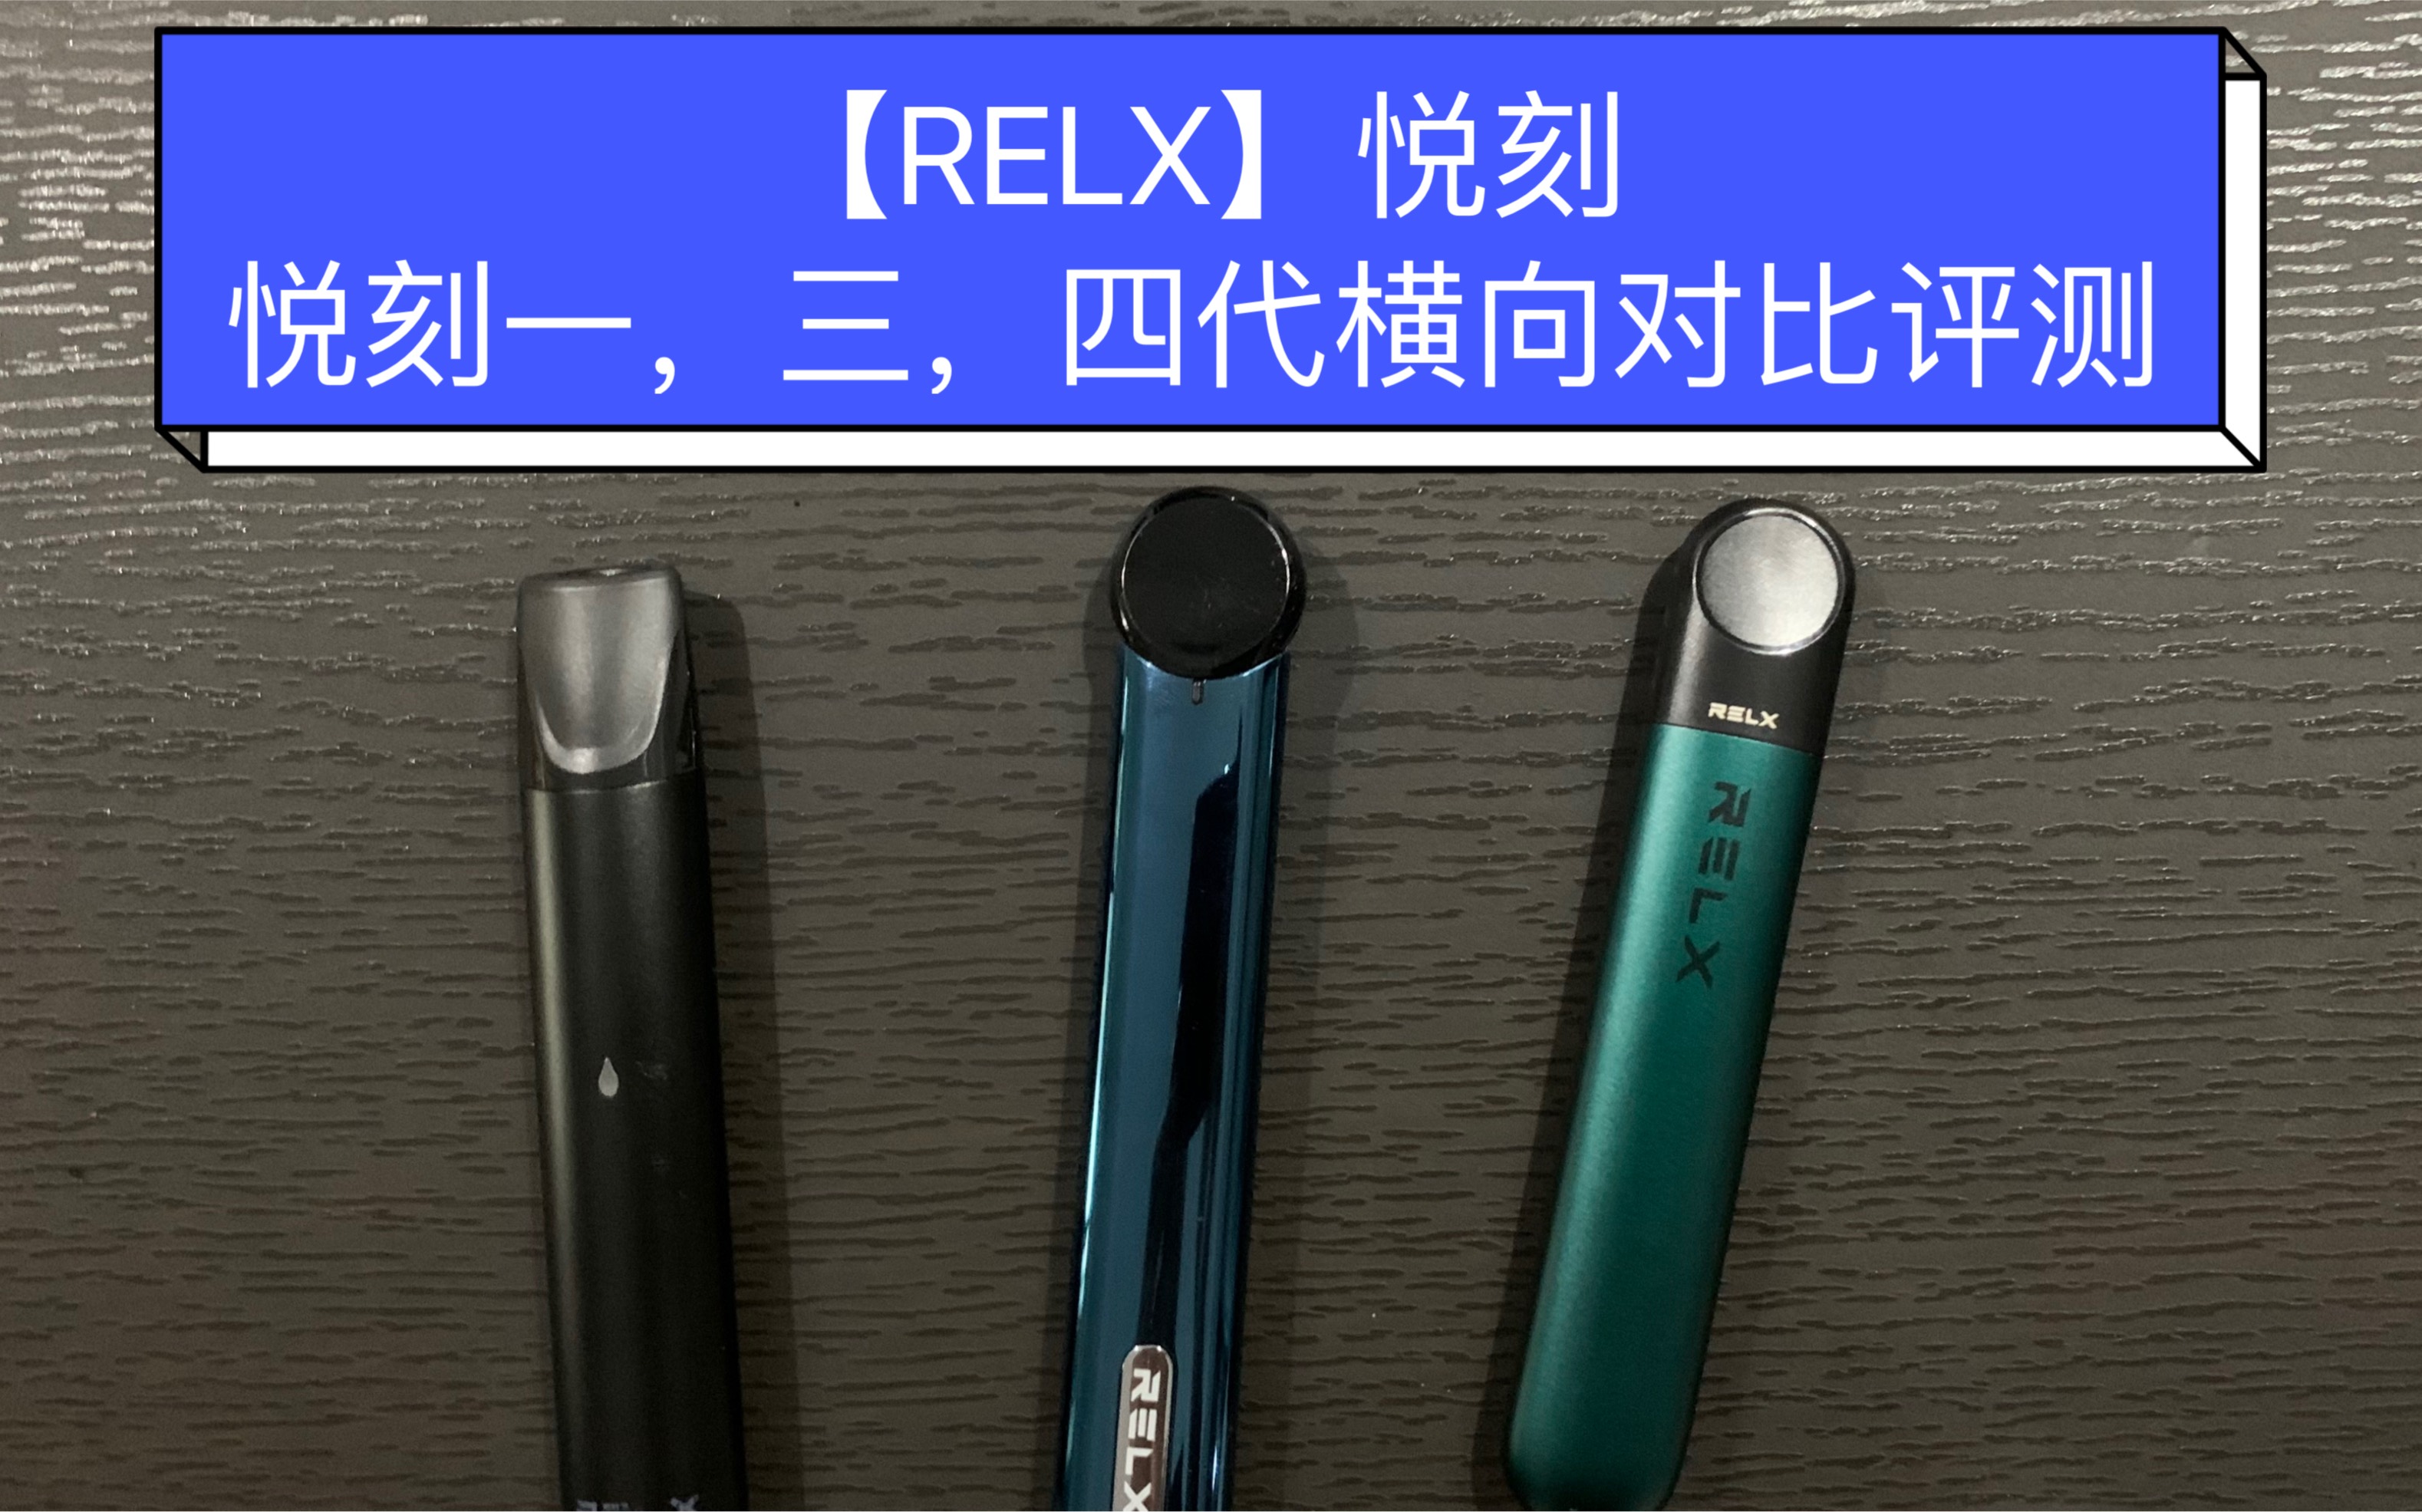 【宇哥评测】relx悦刻一代,三代灵点,四代无限横评&产品杂谈